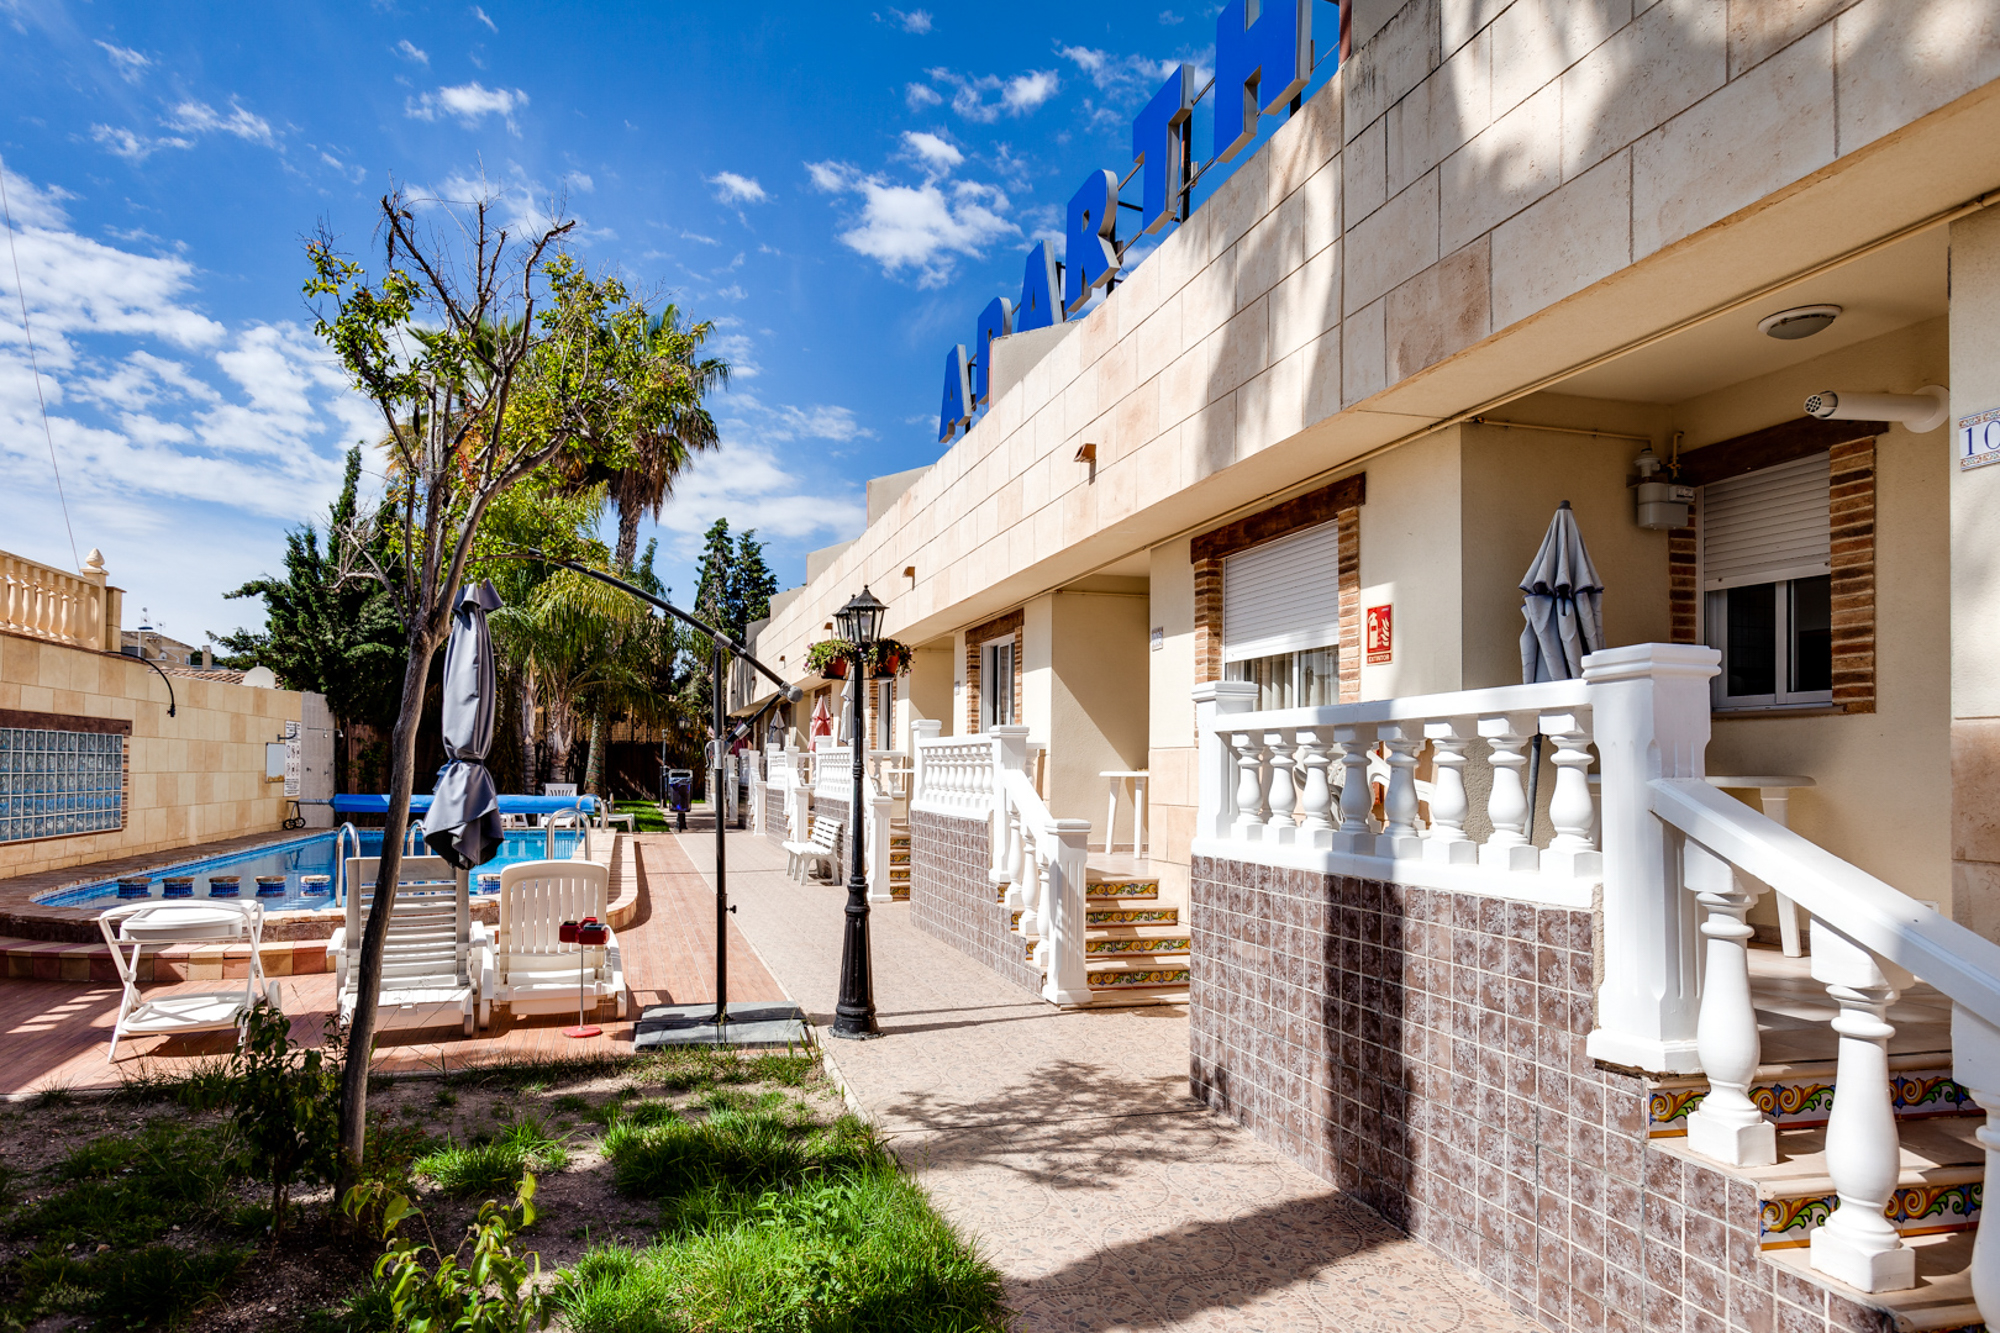 Portal Inmobiliario de Lujo en Torrevieja, presenta hotel de lujo venta en Alicante, apartotel lujoso para comprar y propiedades exclusivas en venta en Baix Segura.